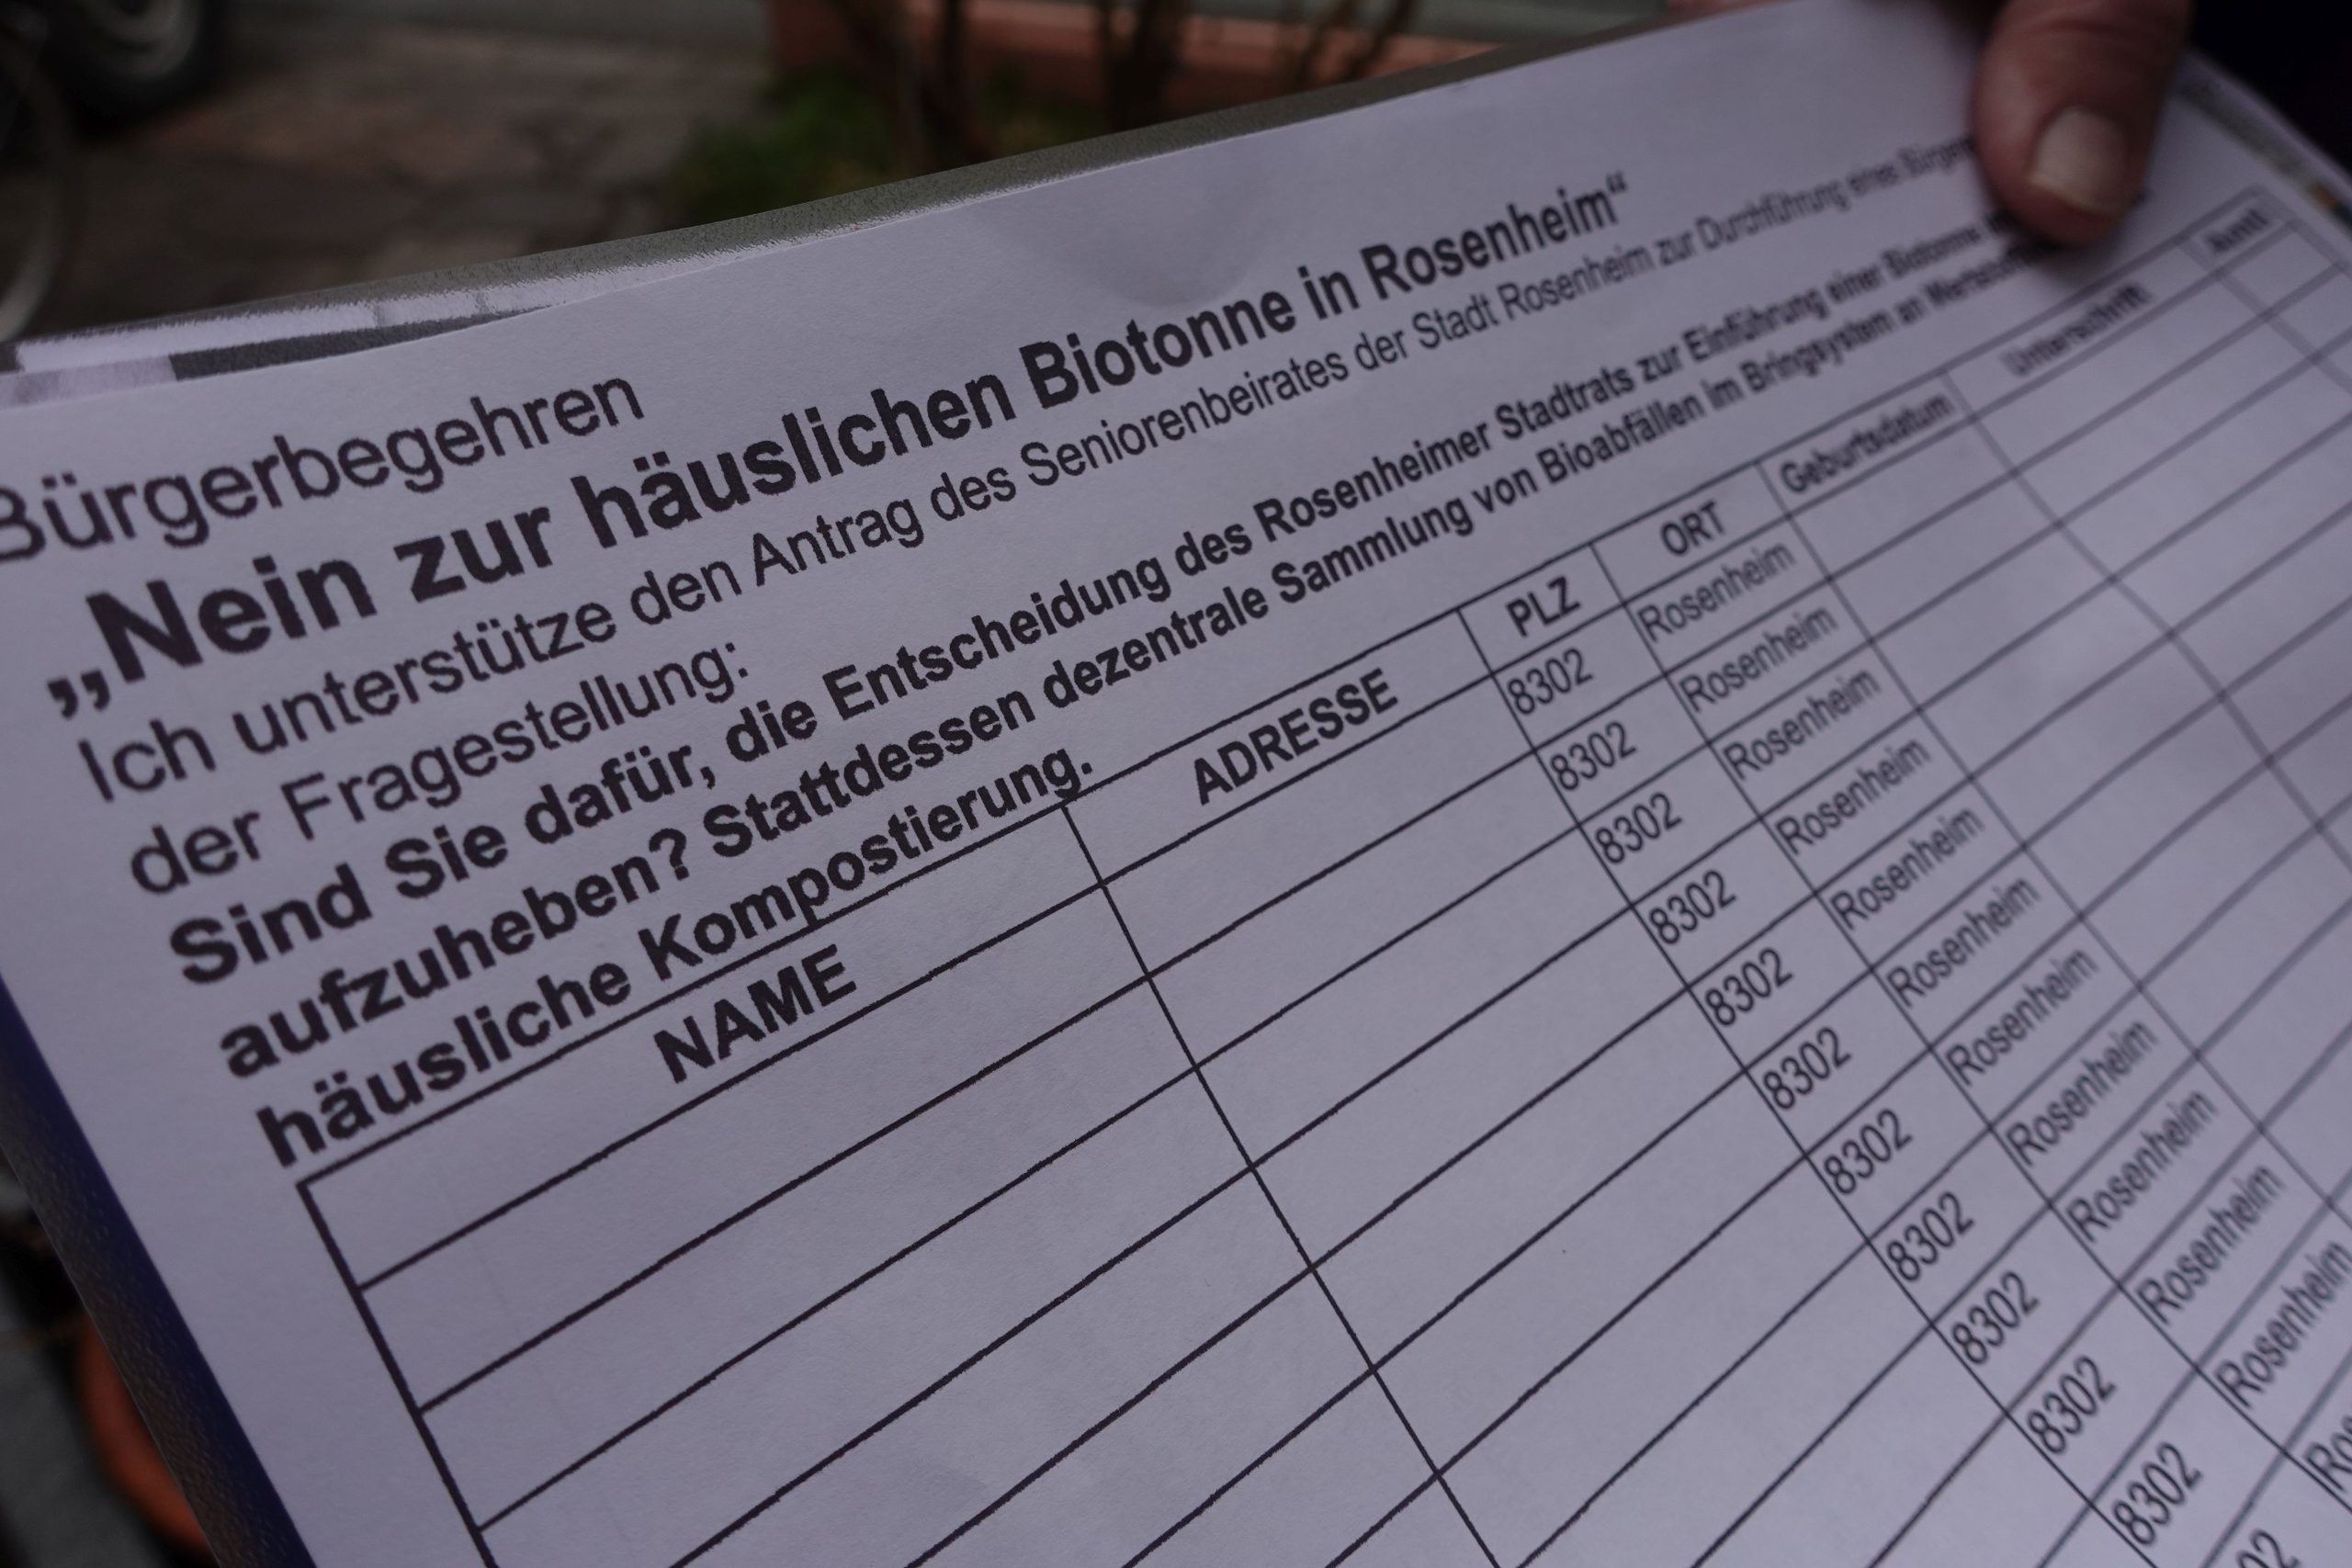 Unterschriftenliste "Nein zur häuslichen Biotonne in Rosenheim". Foto: Innpuls.me